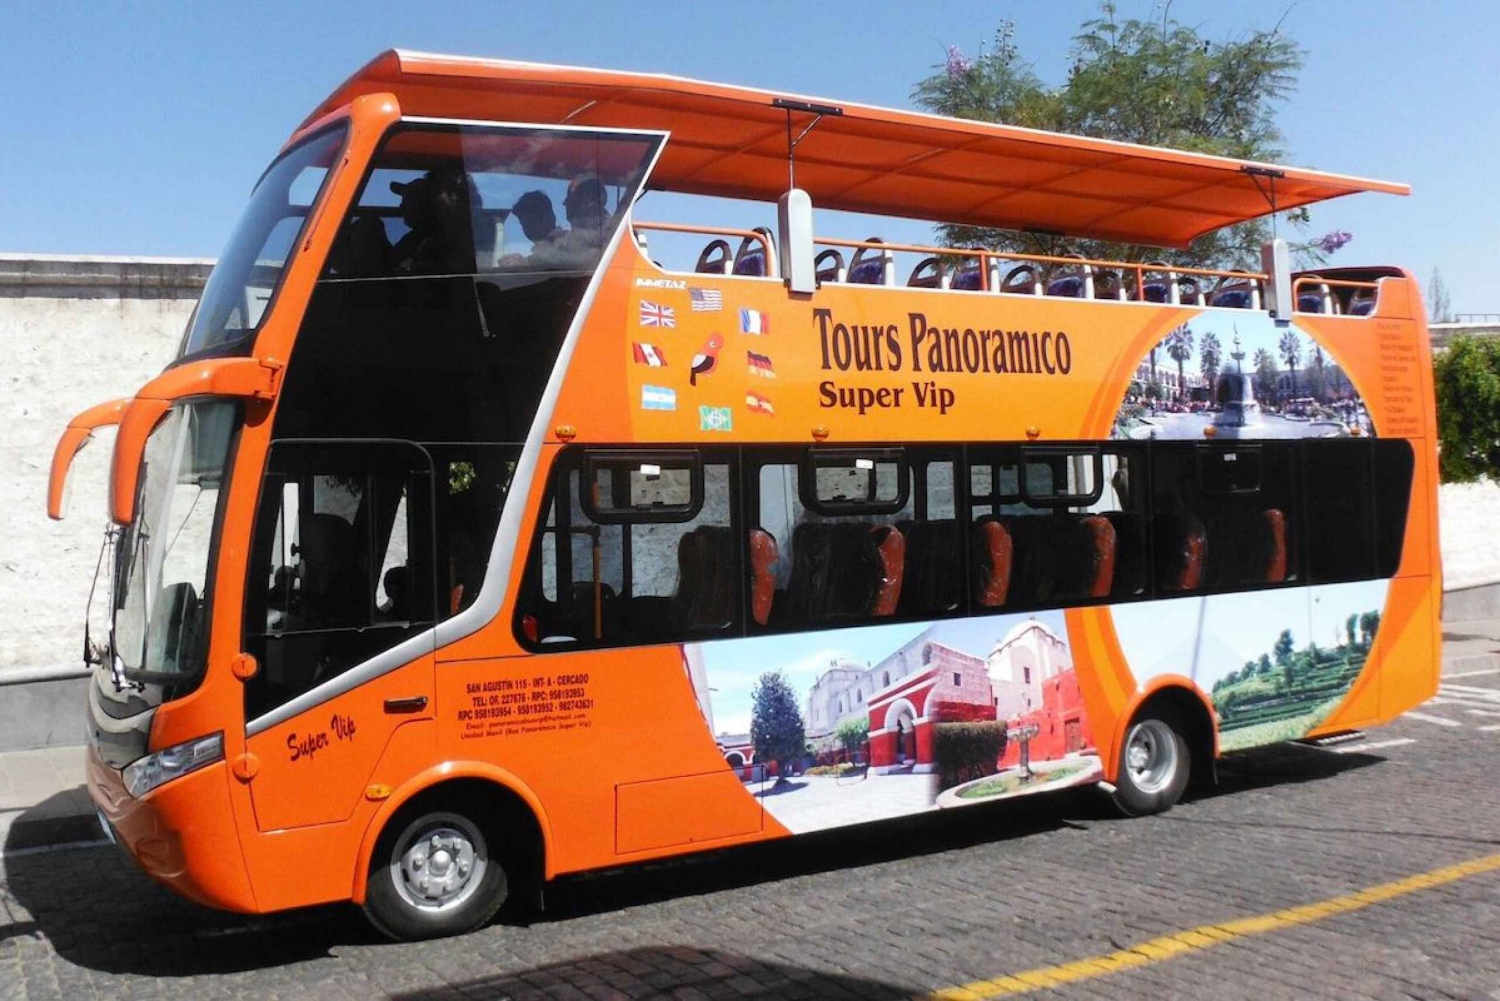 Arequipa Panoramic Bus Tour